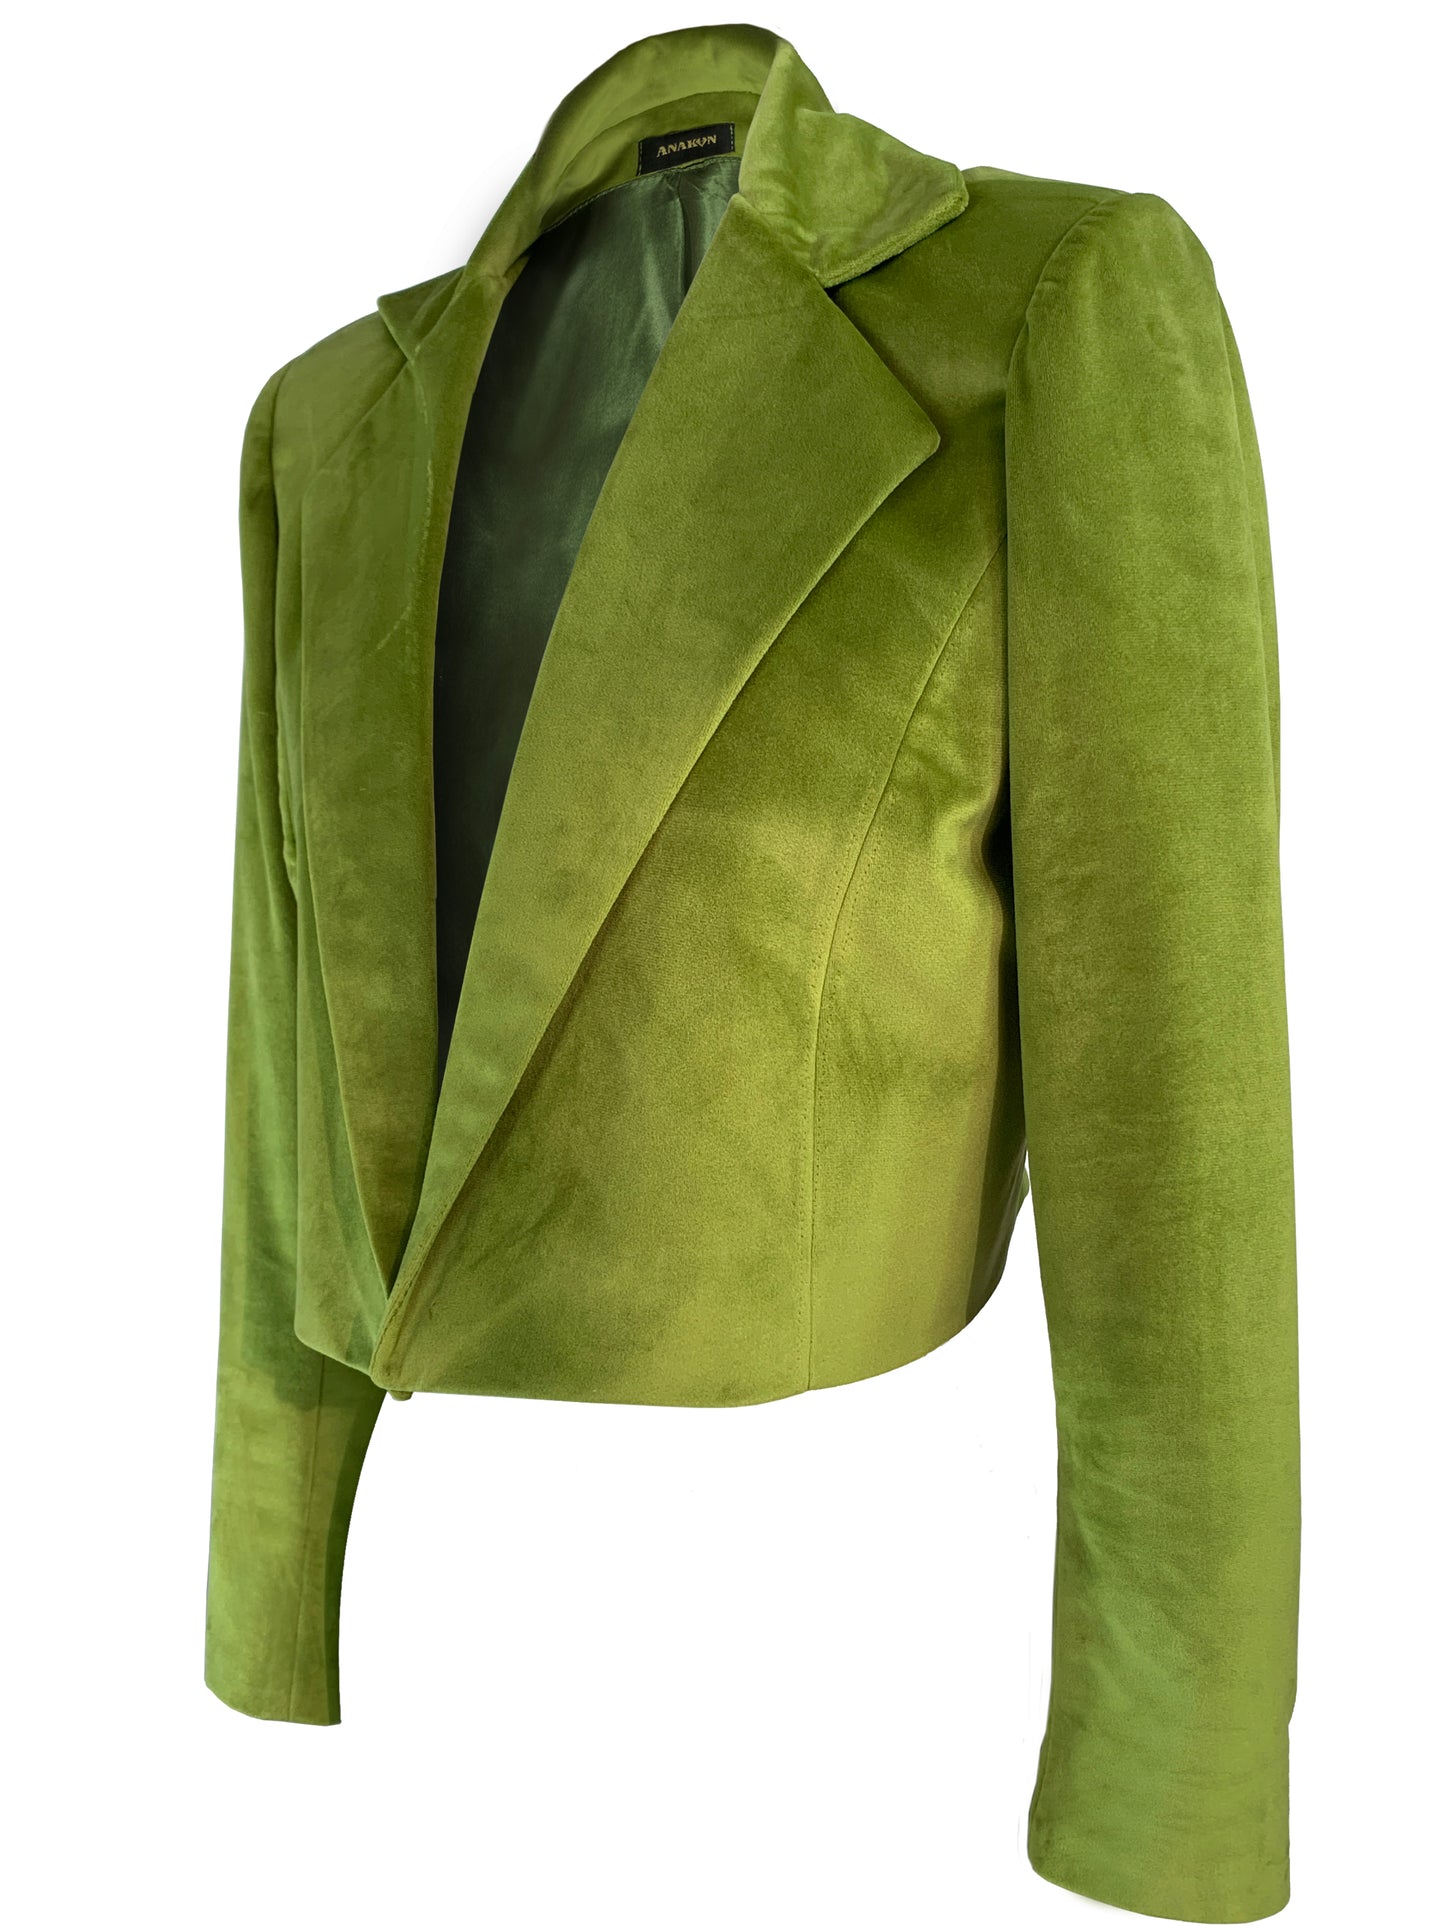 Olive green velvet jacket